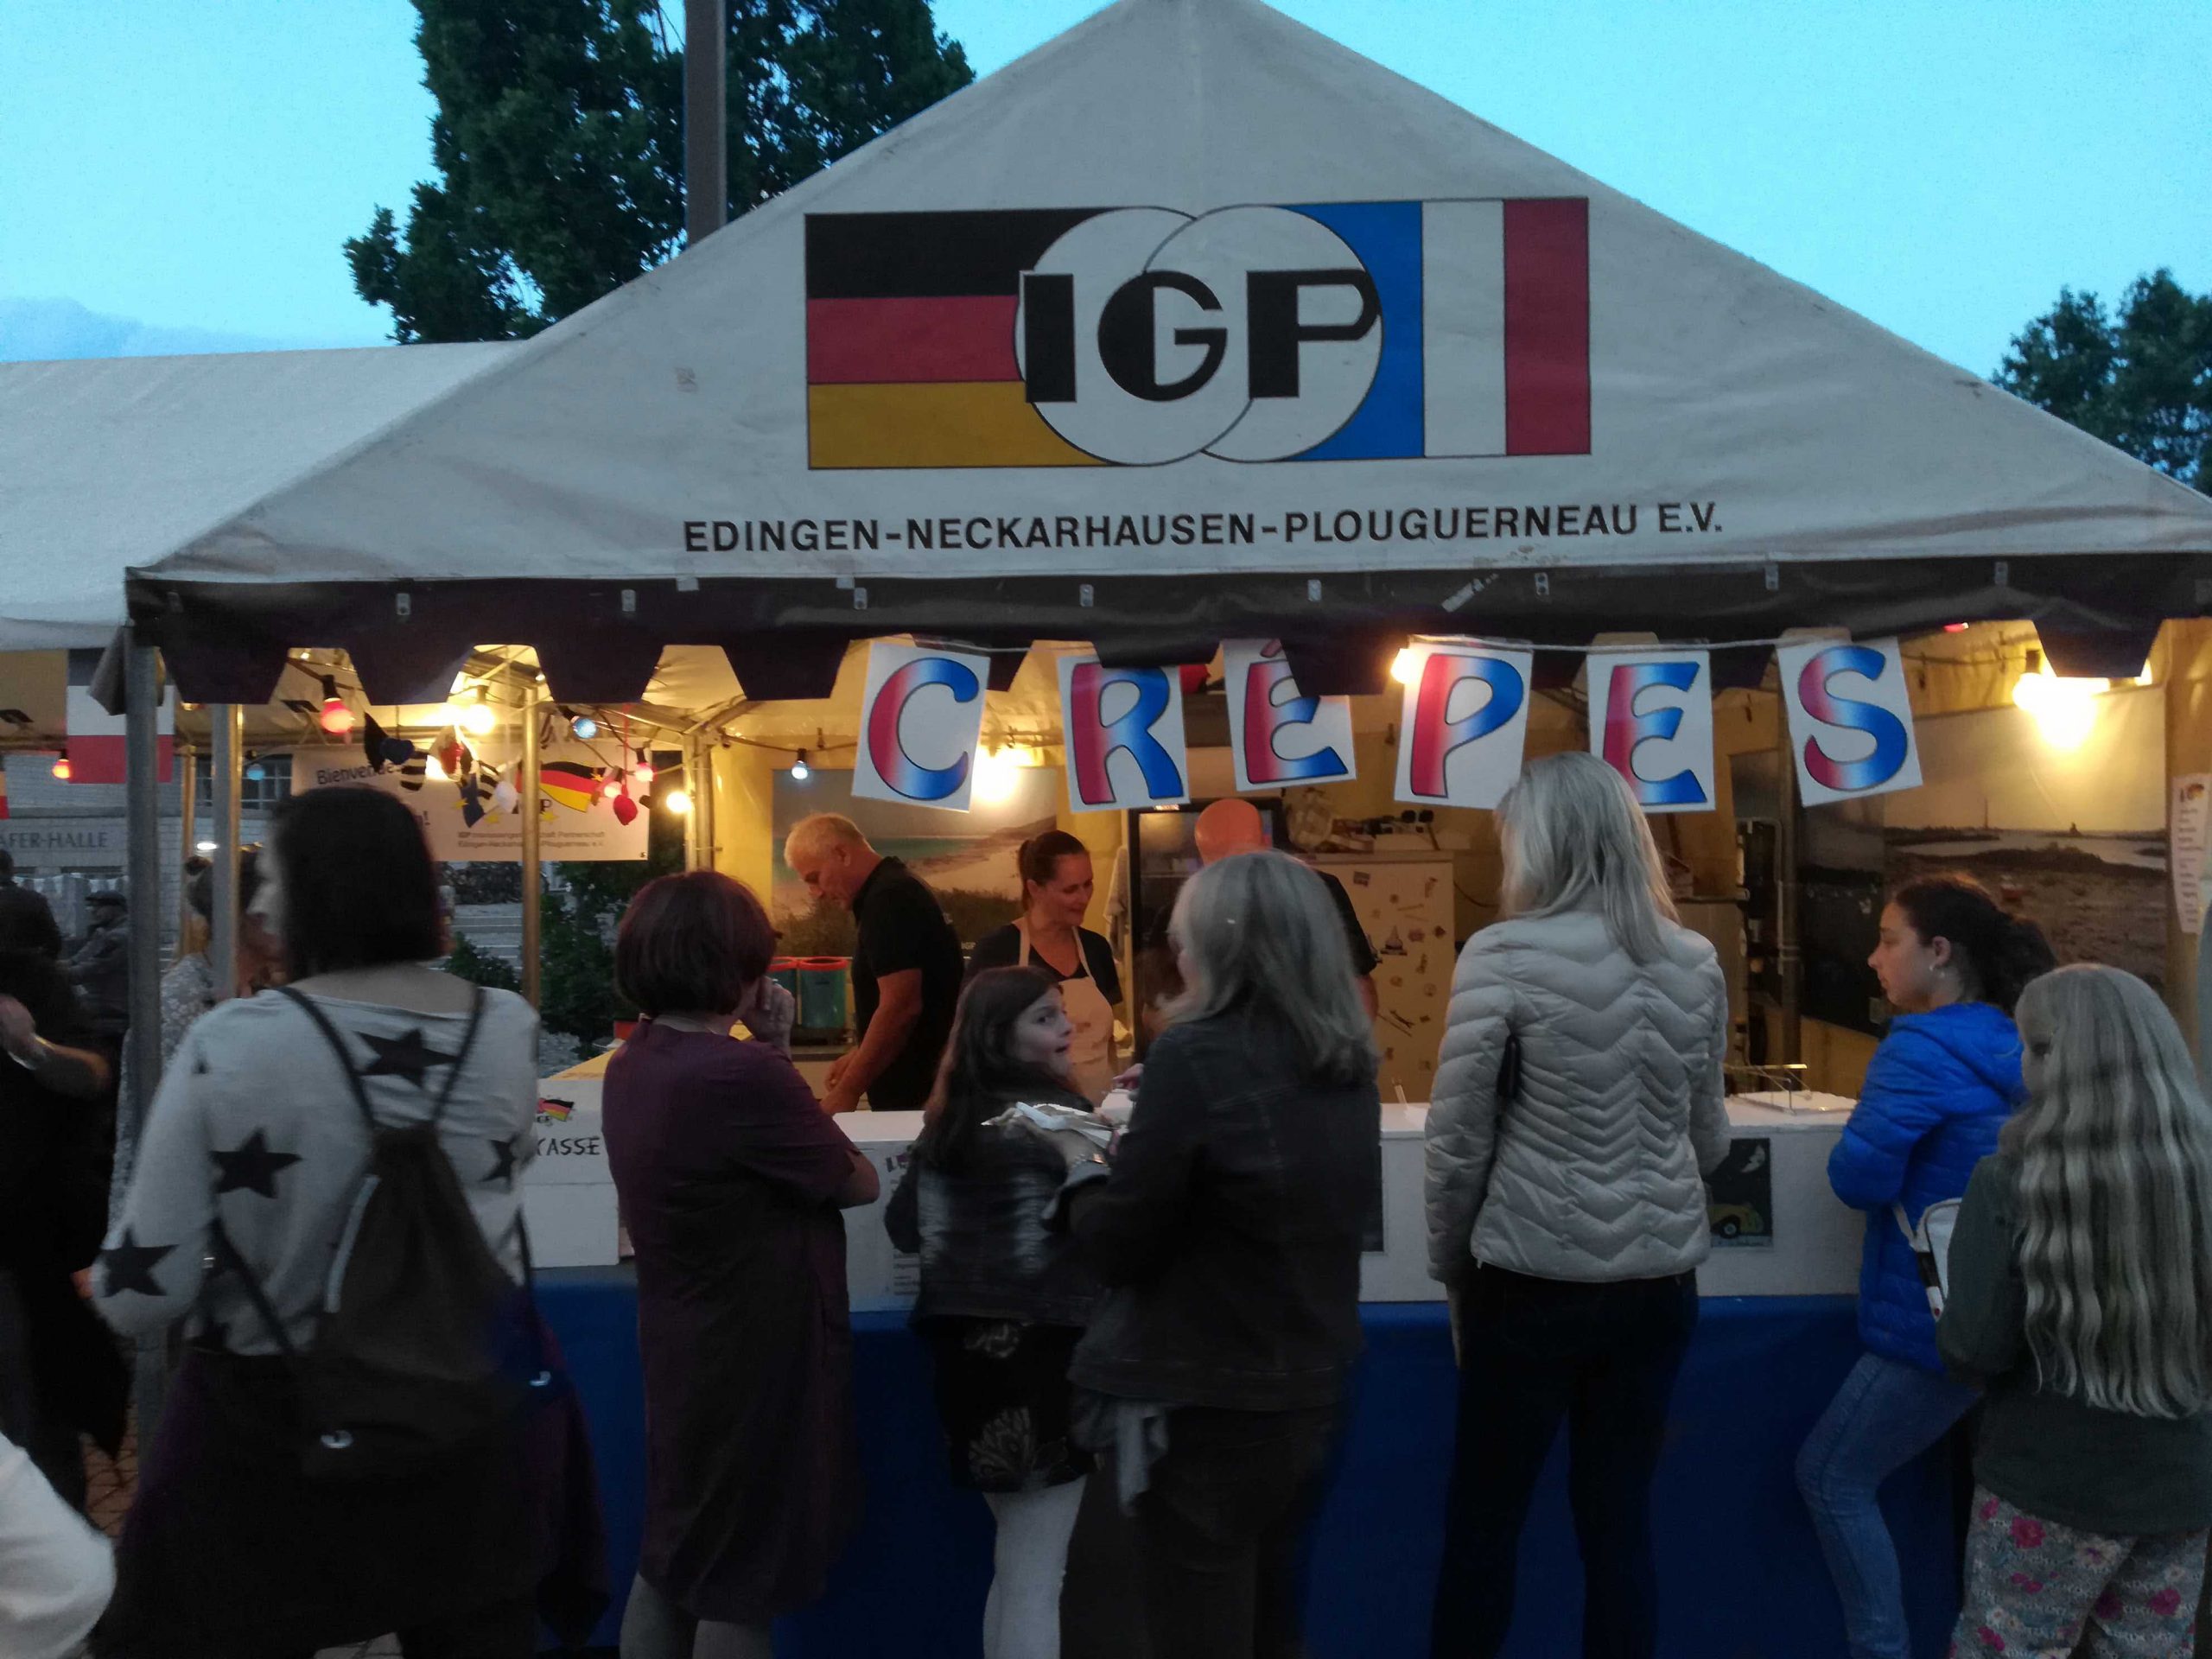 L’IGP e.V. se trouvait à la fête municipale d’Edingen-Neckarhausen au stand de crêpes